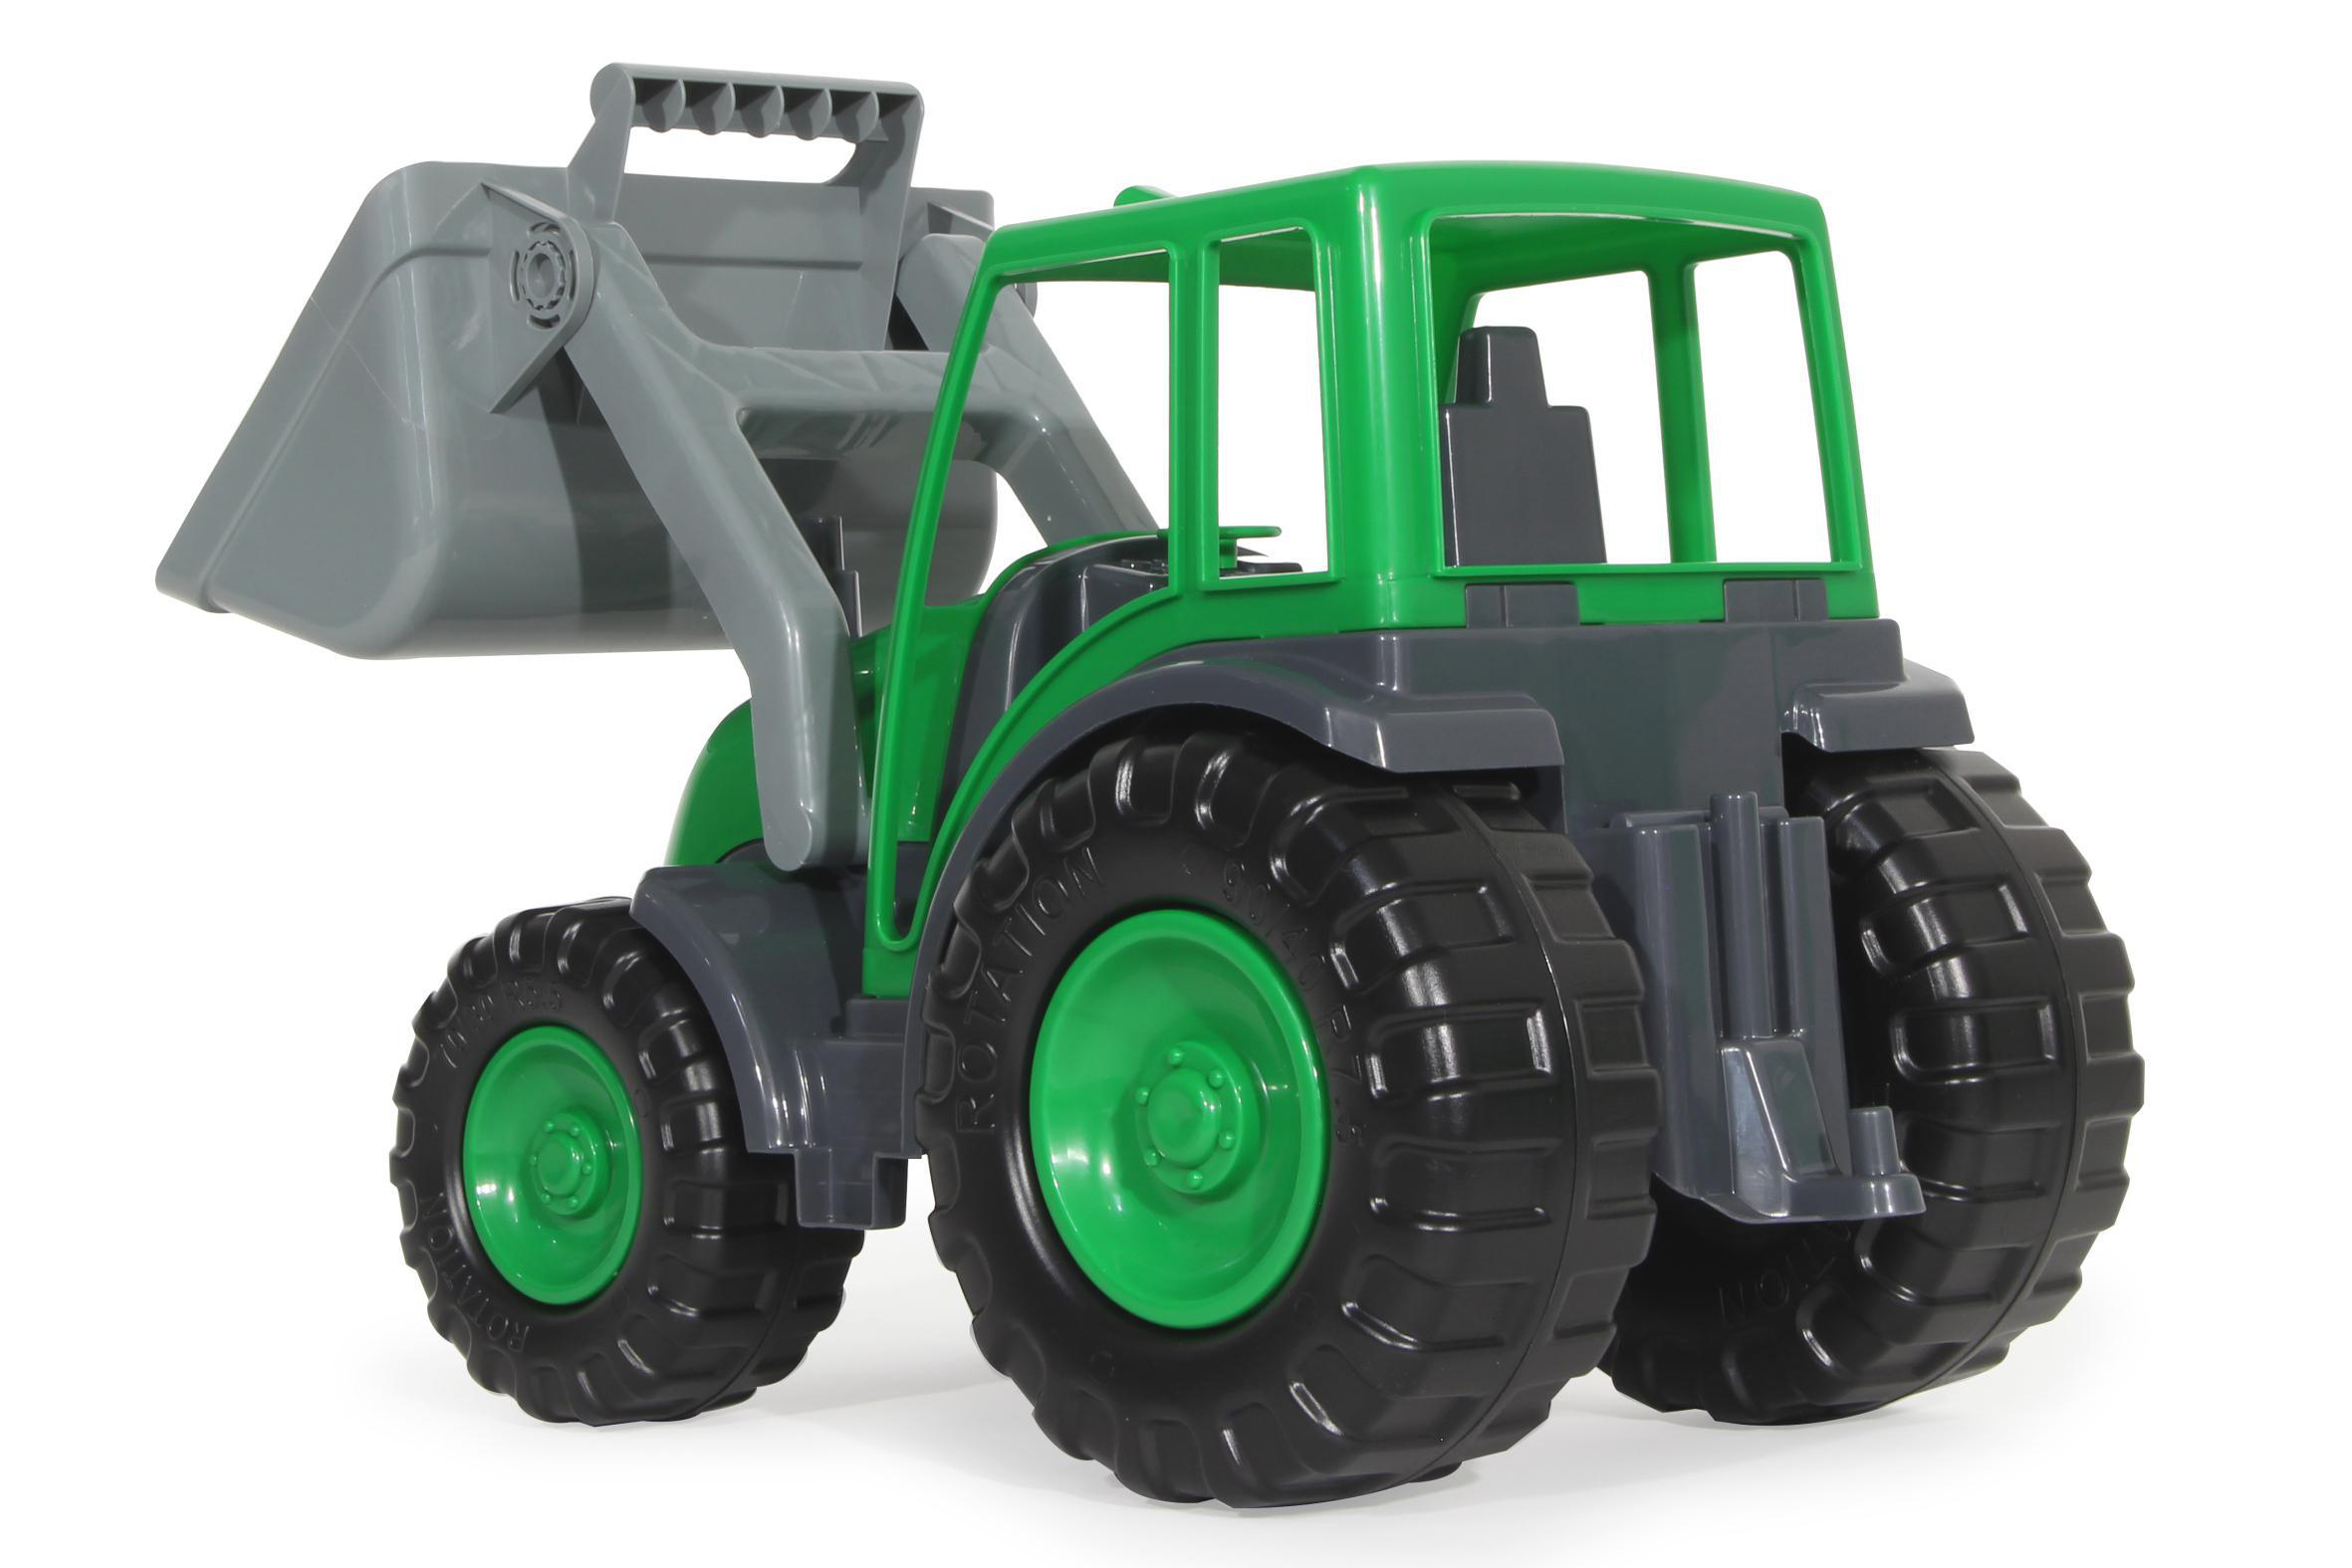 JAMARA Traktor mit Grün Power Frontlader Spielzeugfahrzeug Loader XL